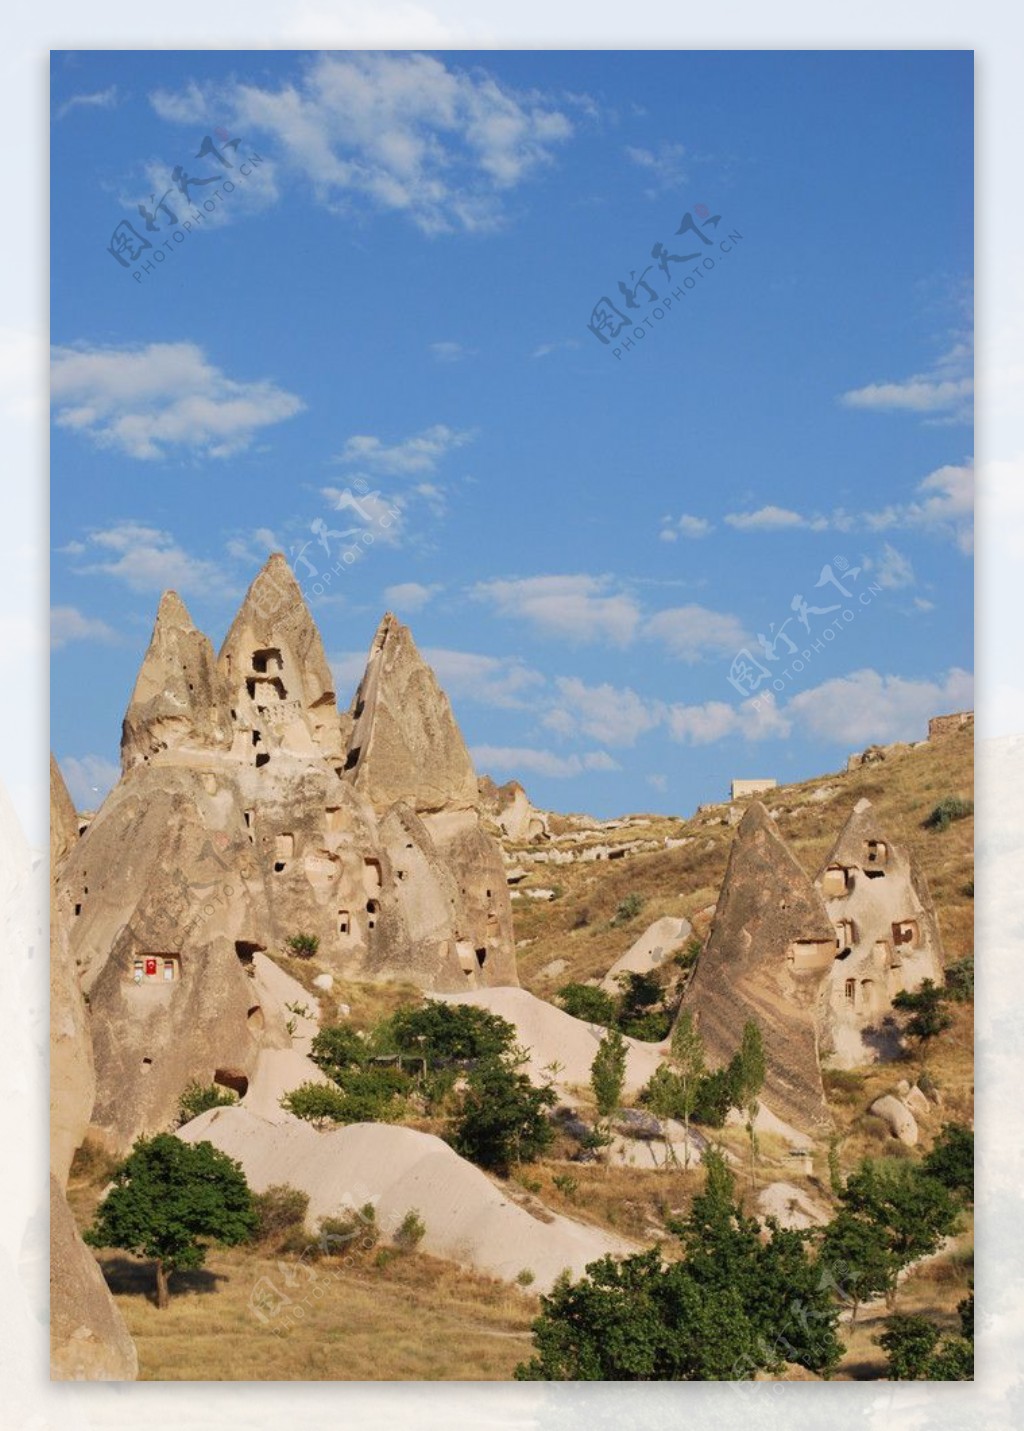 土耳其卡帕多奇亚的山洞图片